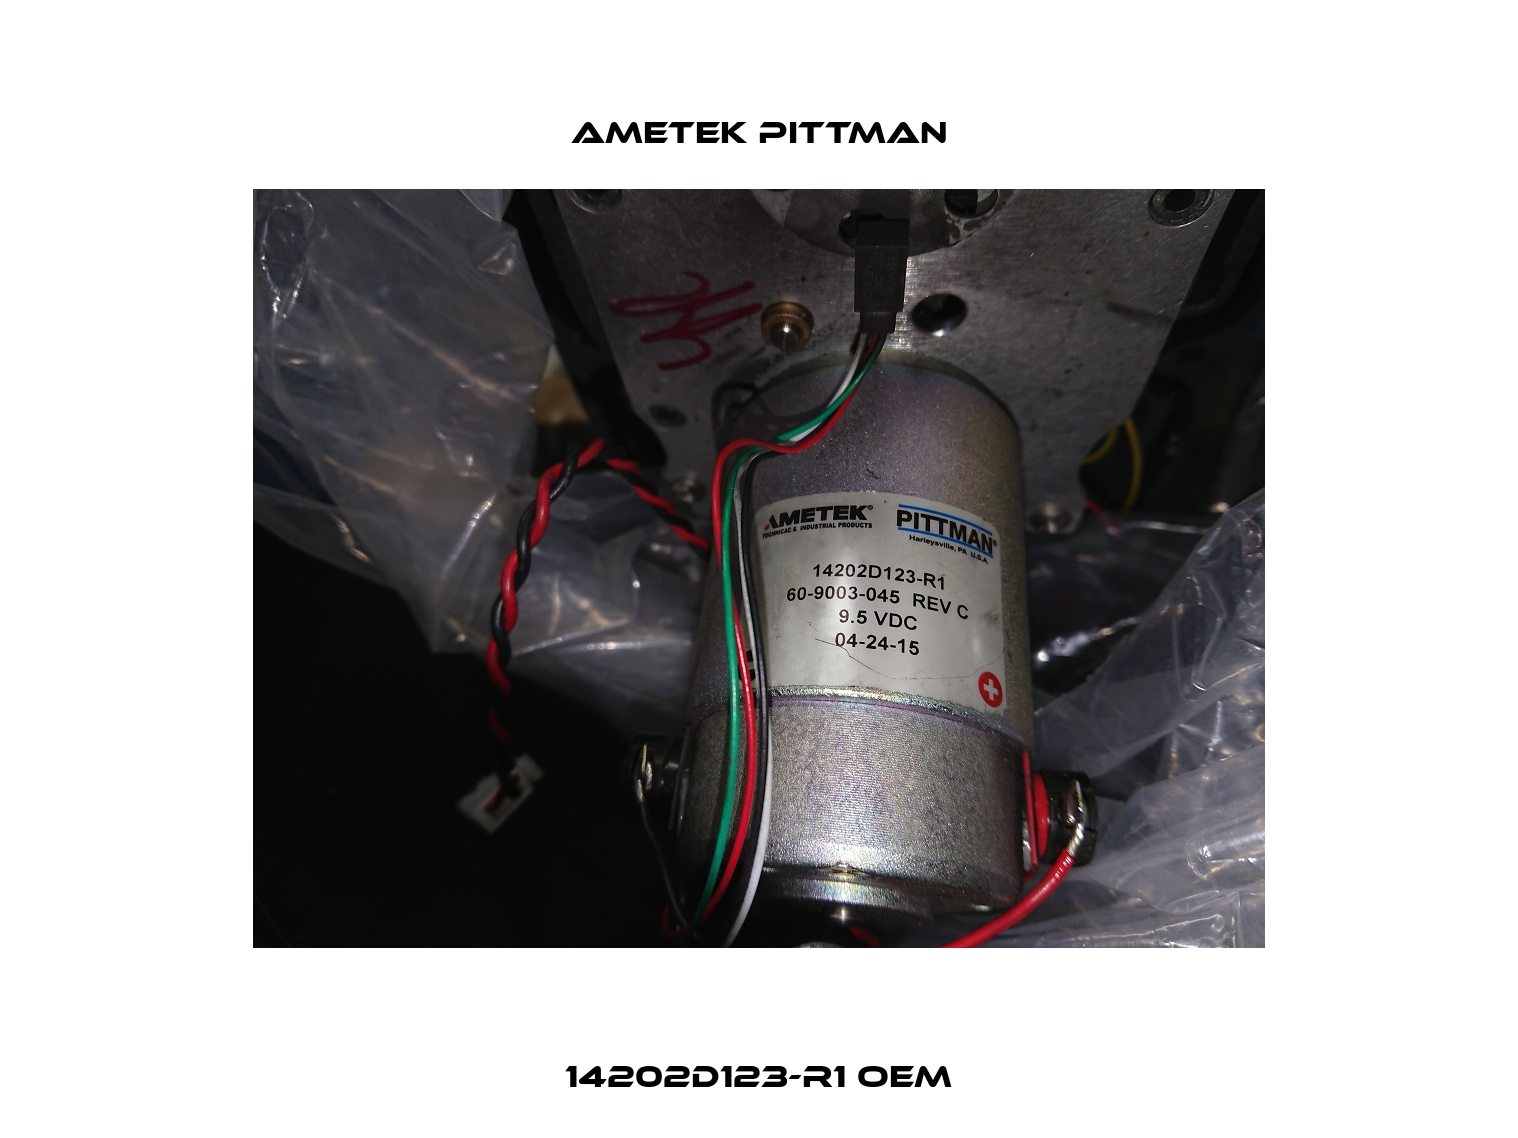 14202D123-R1 oem Ametek Pittman